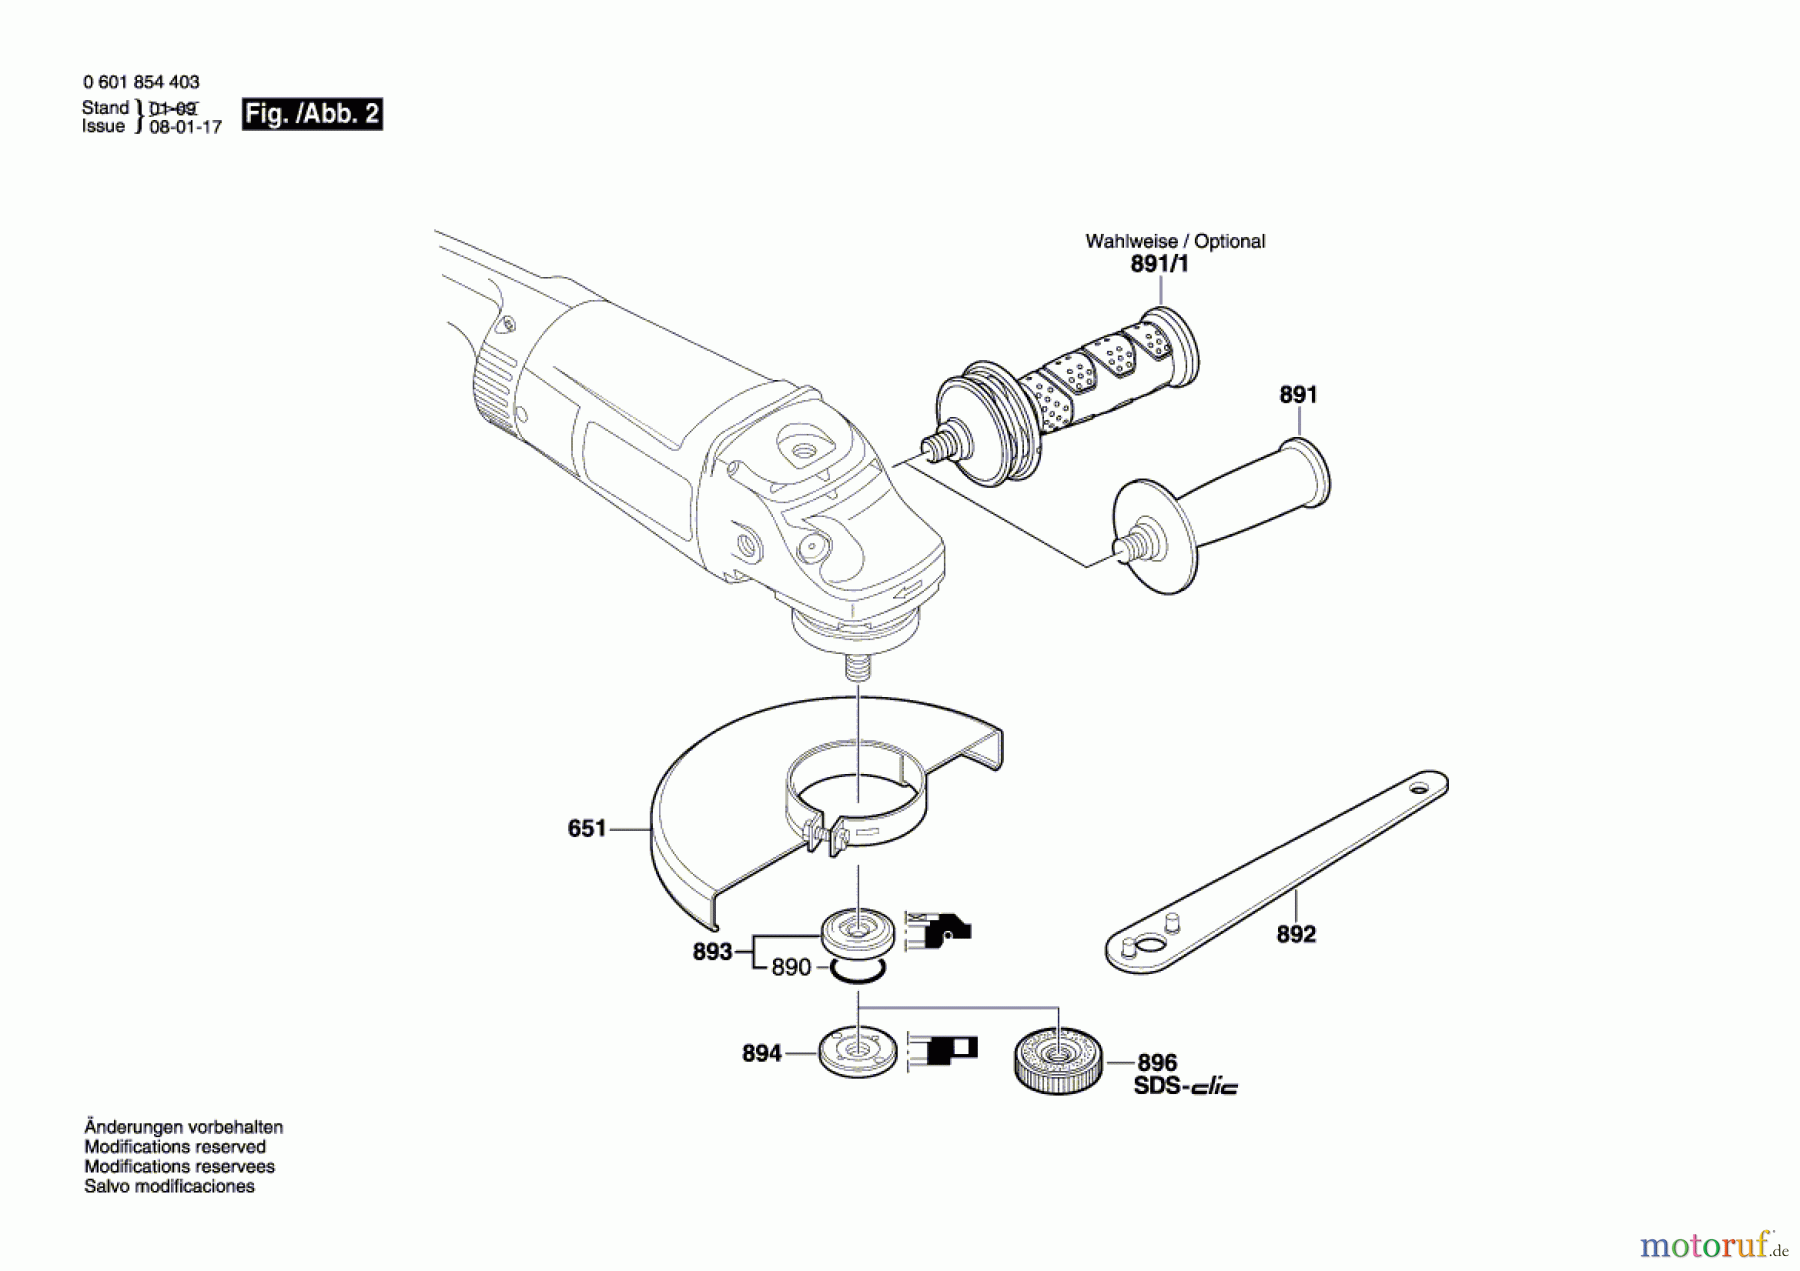  Bosch Werkzeug Winkelschleifer GWS 24-230 H Seite 2